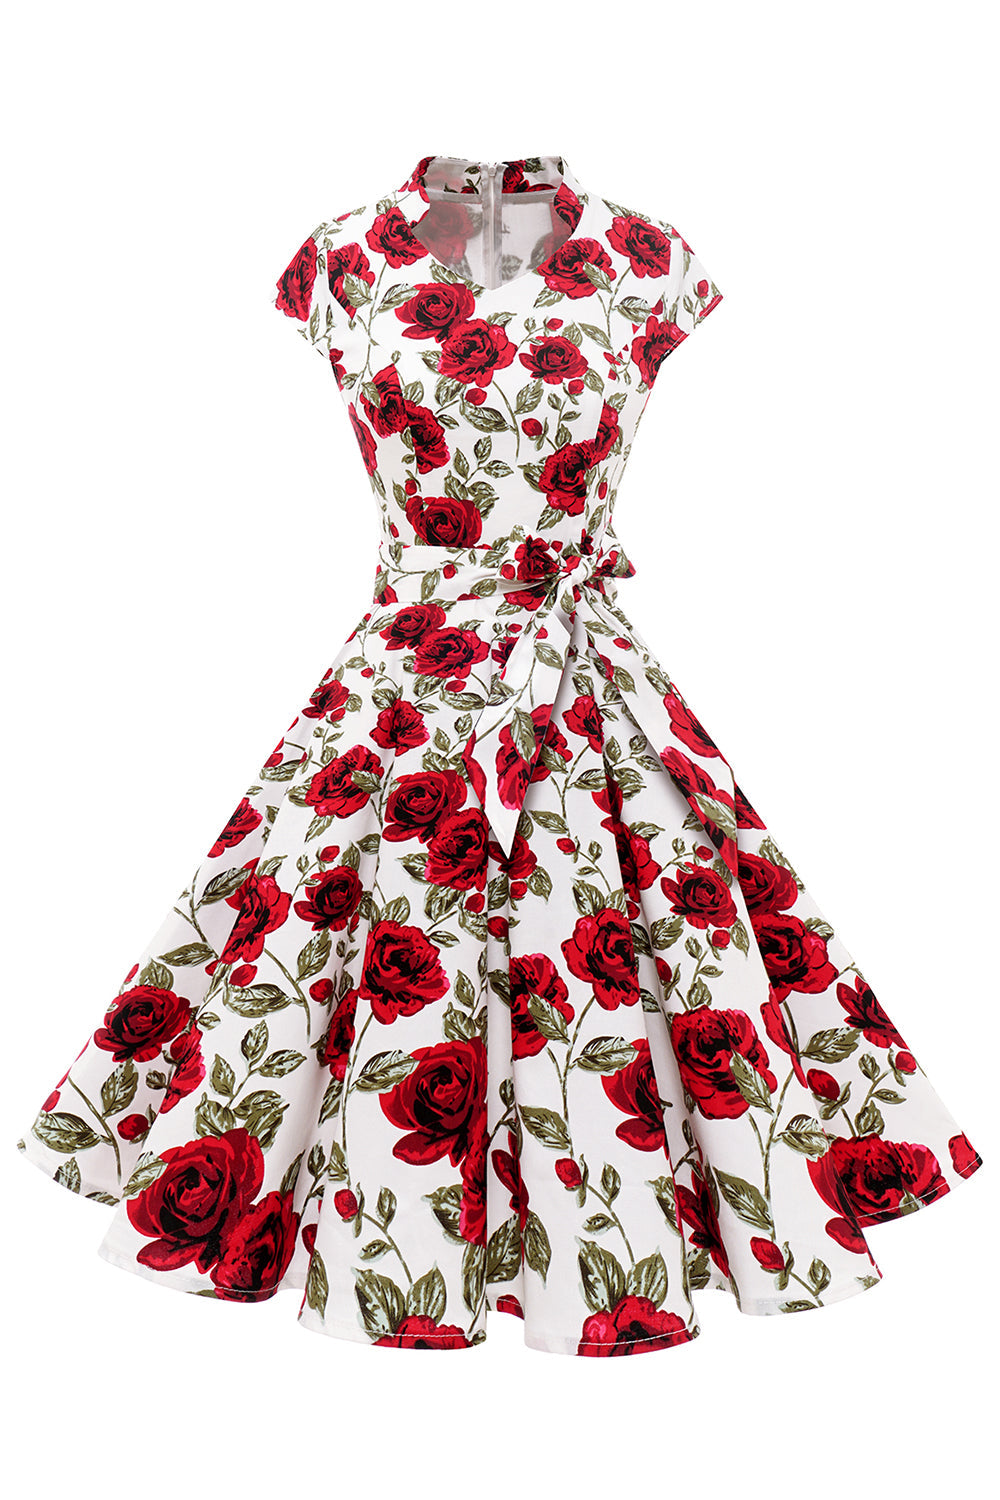 Red Rose Floral Vintage Swing Dress